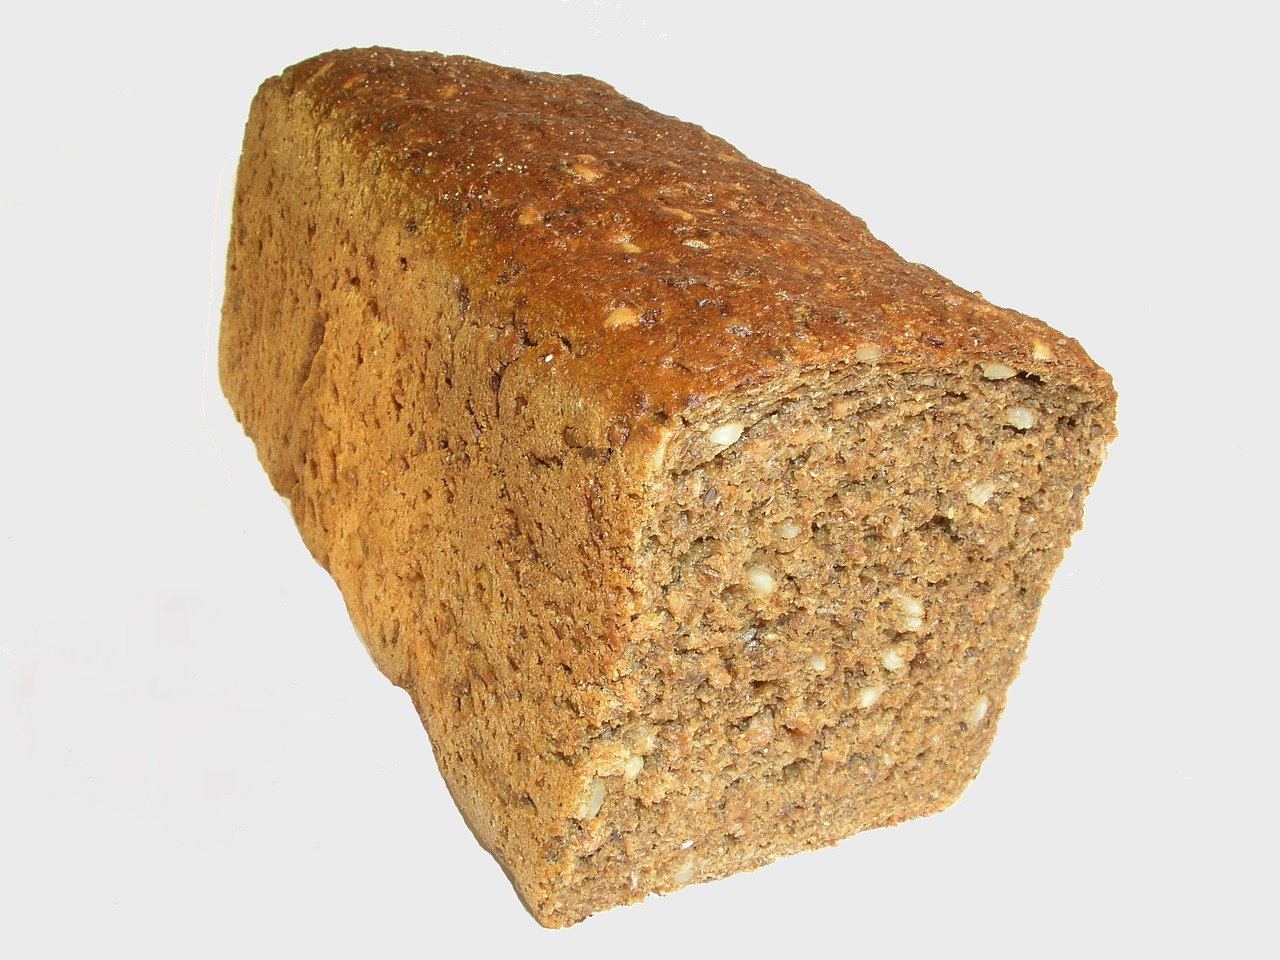 core rye bread bread rye bread free photo